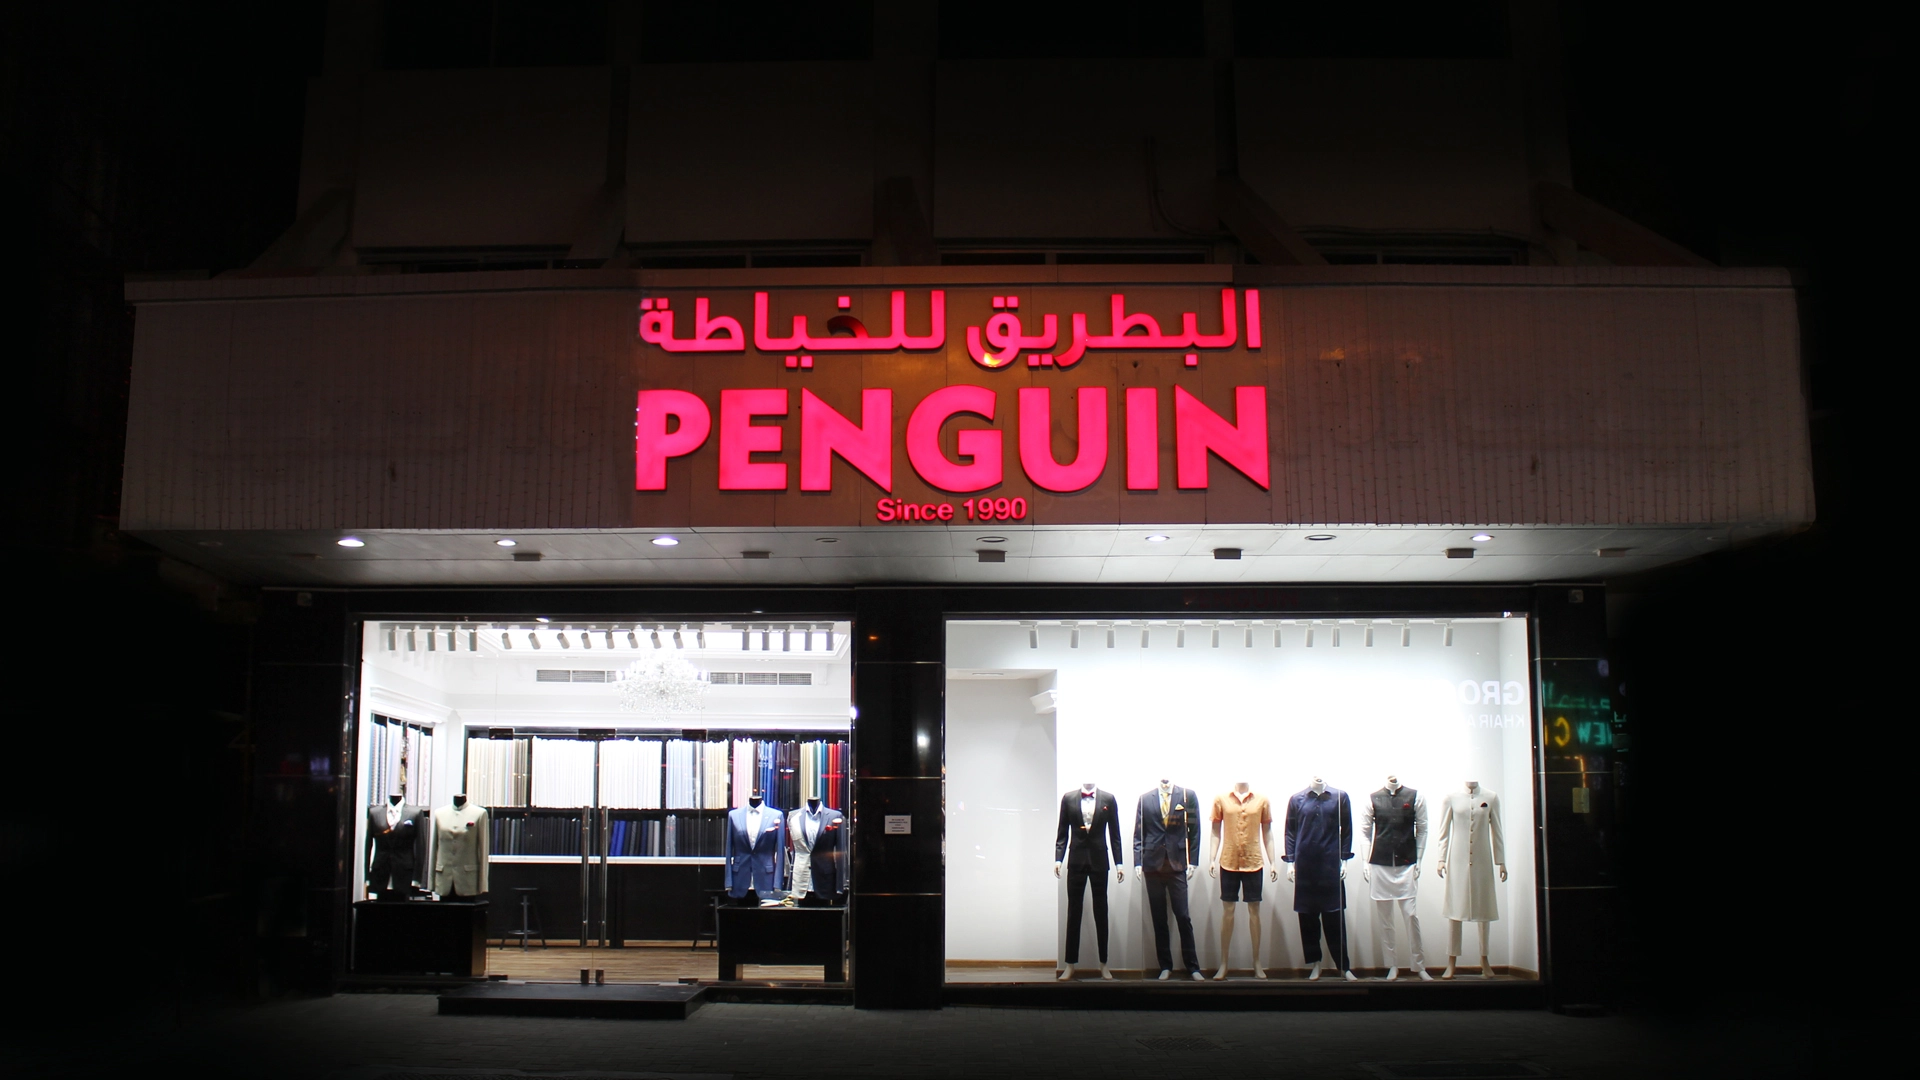 Penguin Shop Image